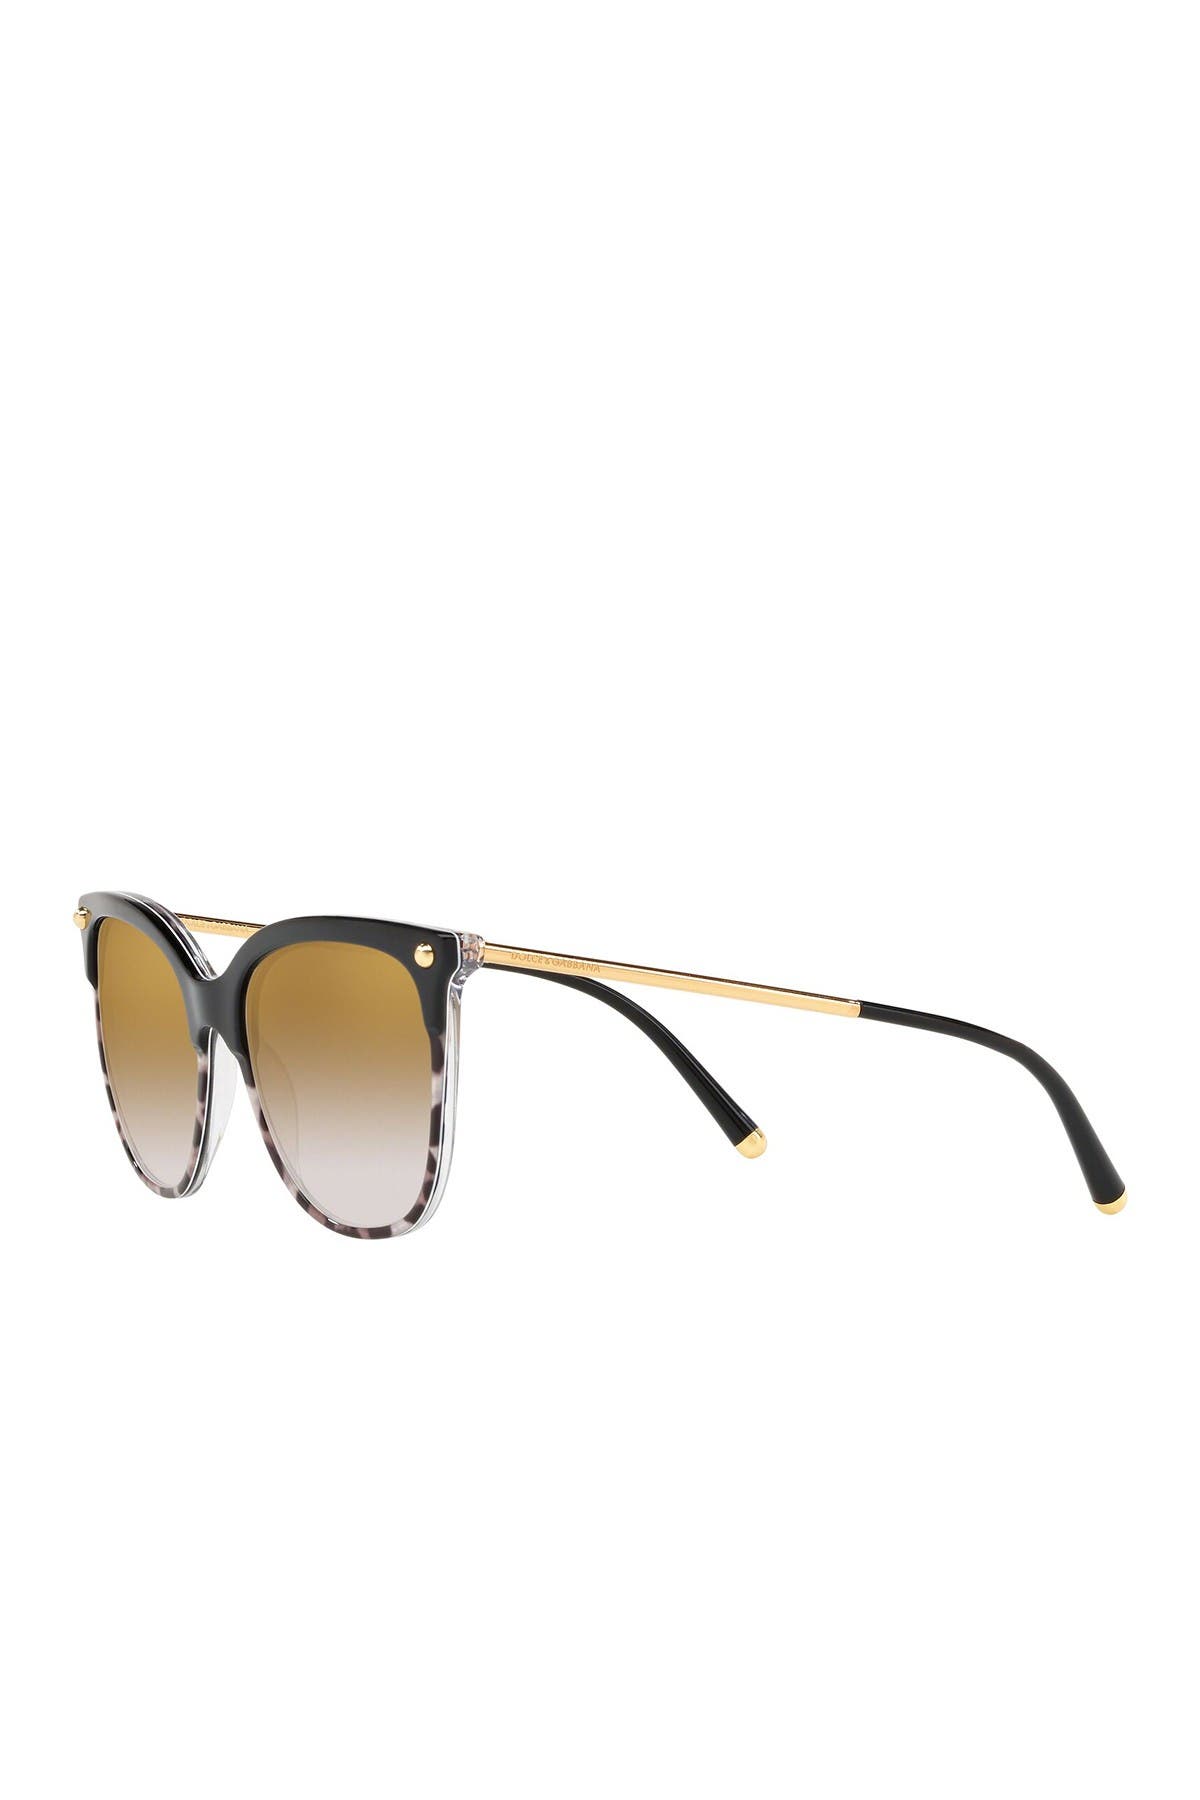 dolce & gabbana 55mm wayfarer sunglasses